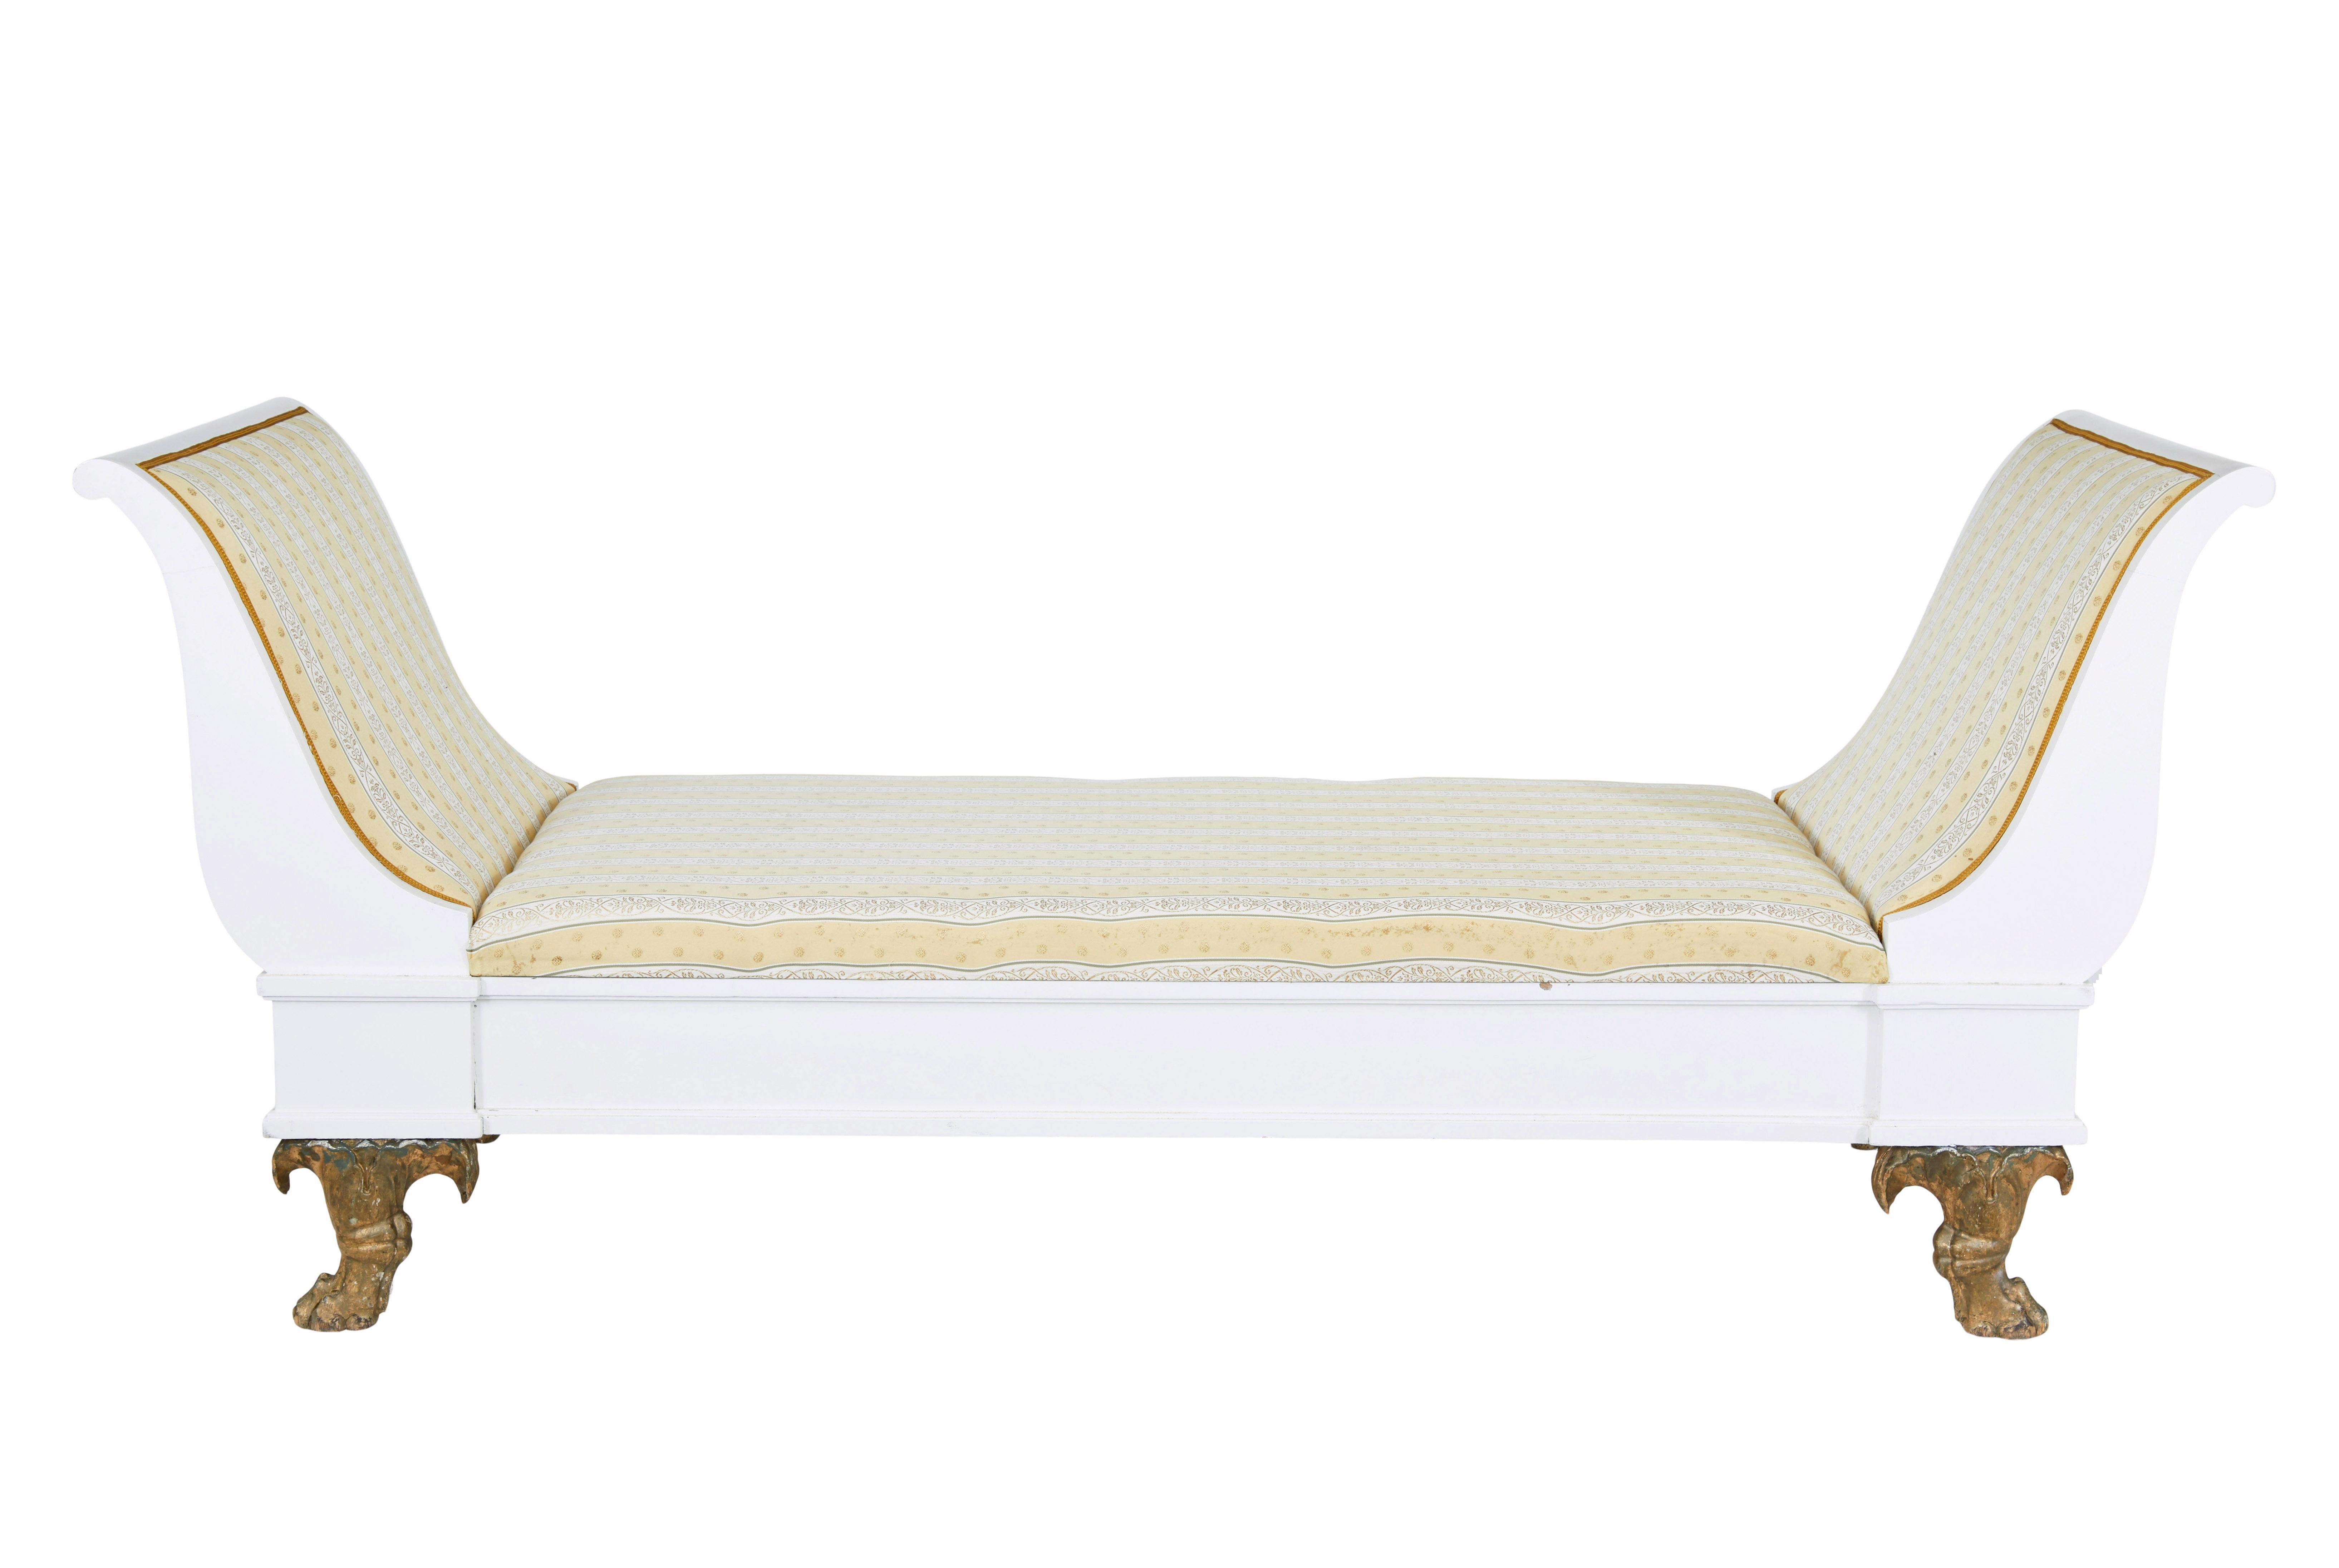 Frühes 20. Jahrhundert Empire Revival gemalt skandinavischen Tag Bett circa 1900.

Großes schwedisches Tagesbett mit geschwungenen Endstützen.  Der Rahmen aus Kiefernholz wurde später weiß gestrichen und steht auf geschnitzten Tatzenfüßen mit